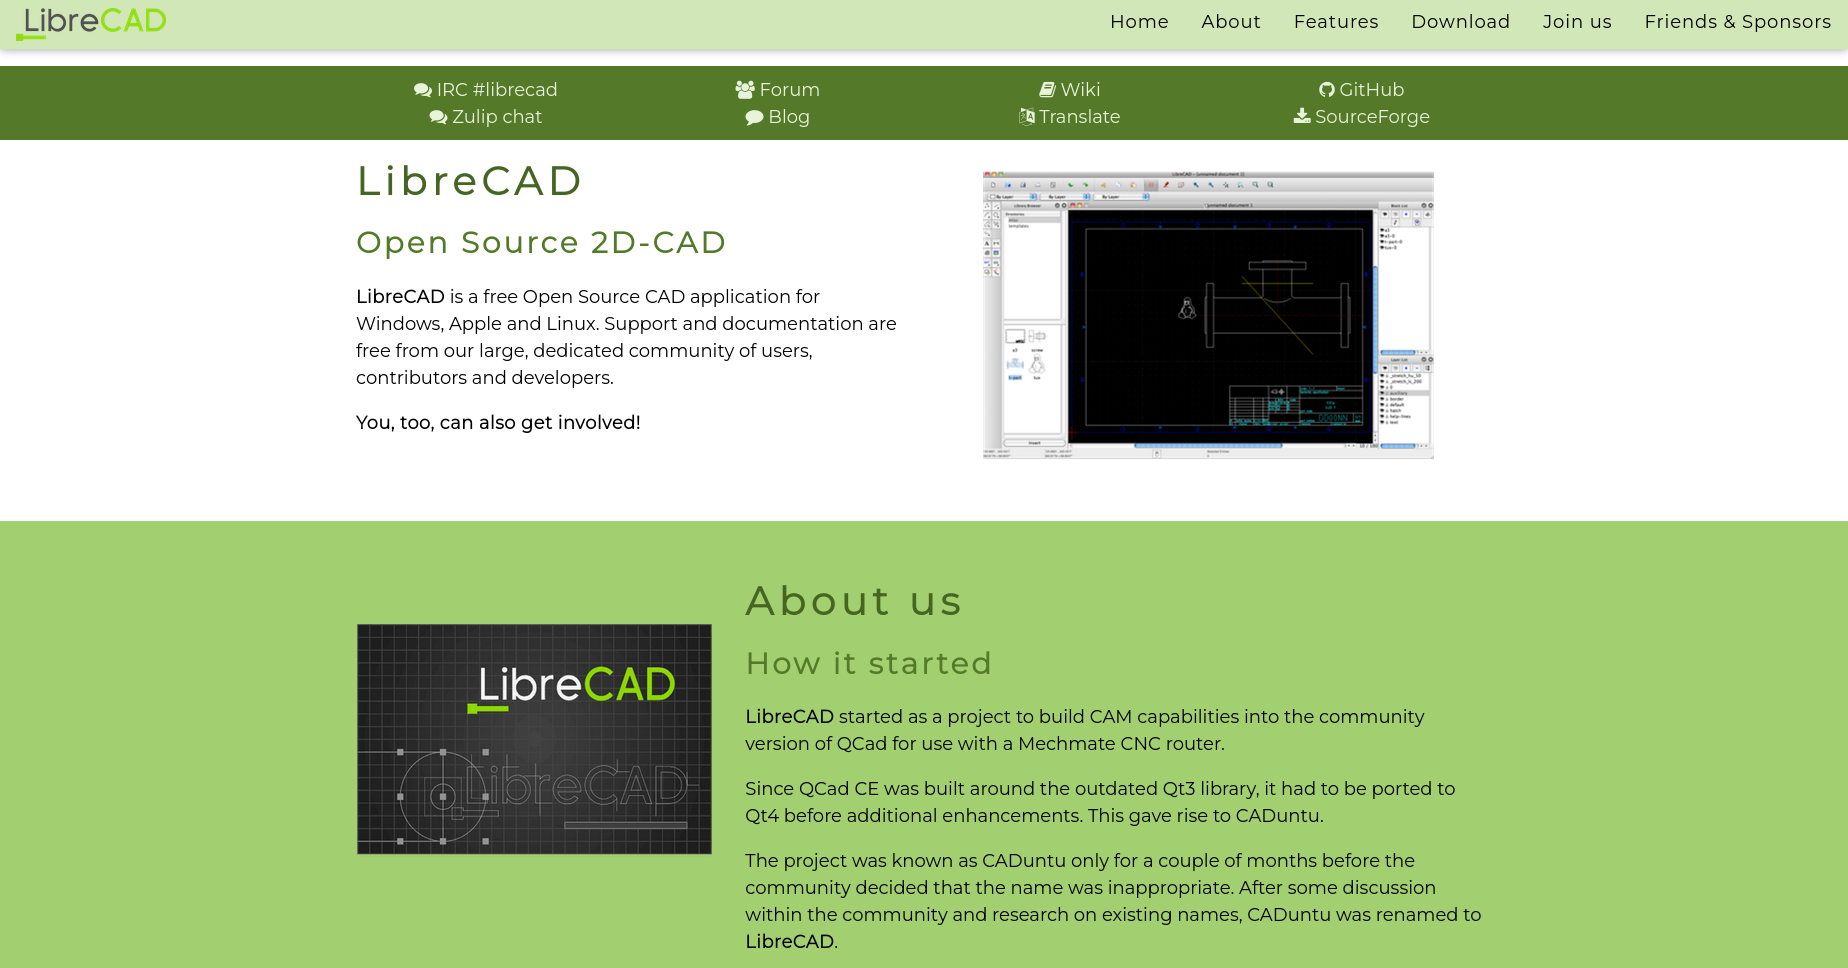 LibreCAD - Free Open Source 2D CAD